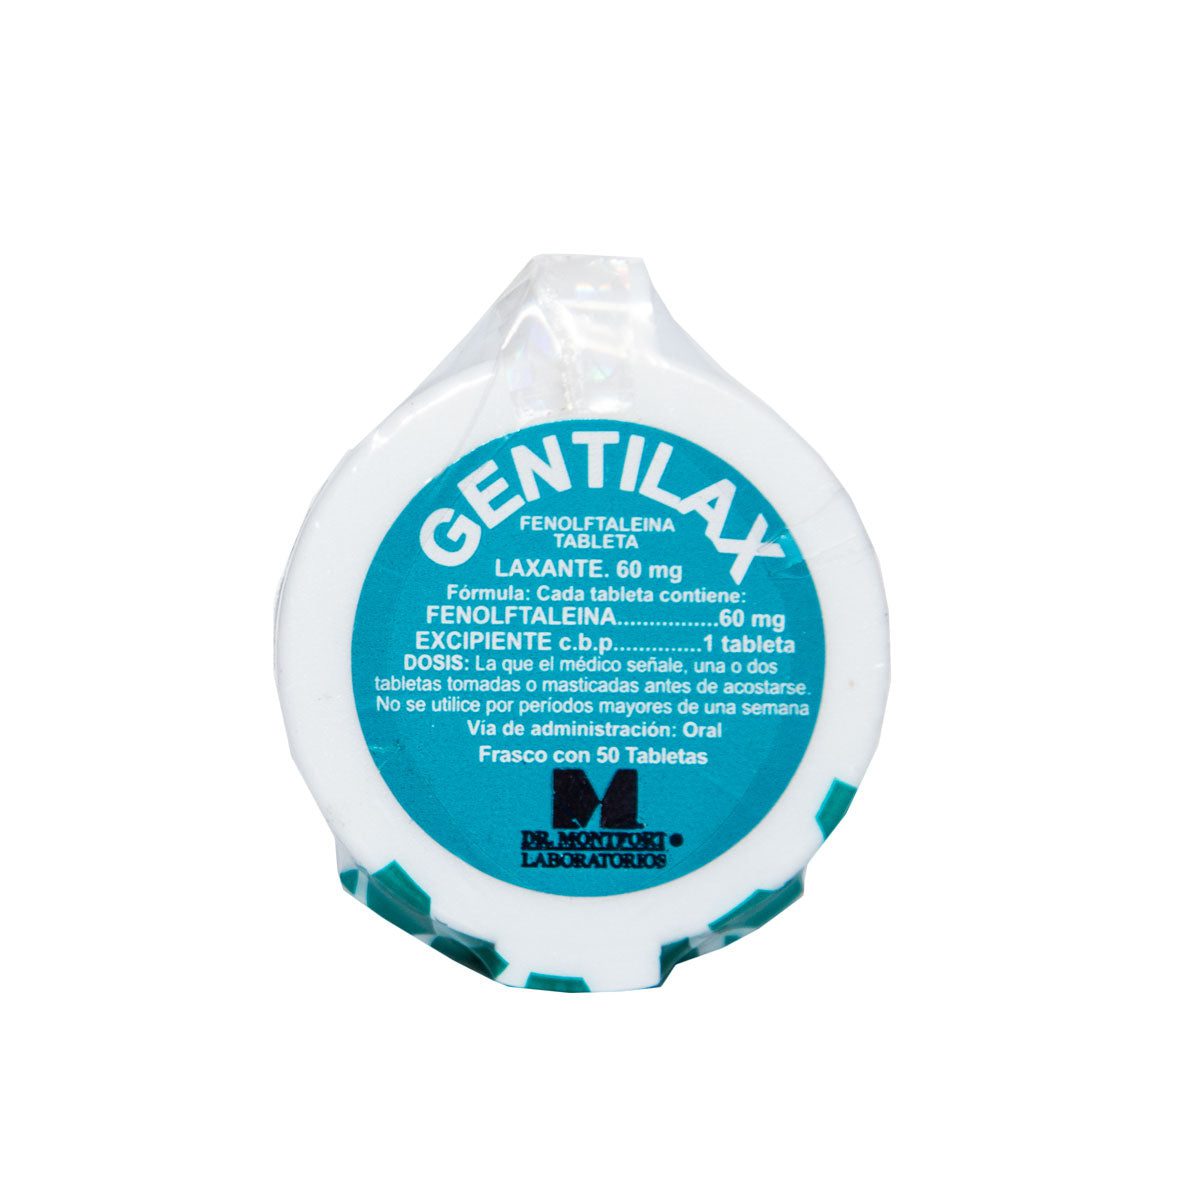 Gentilax 50 tabletas